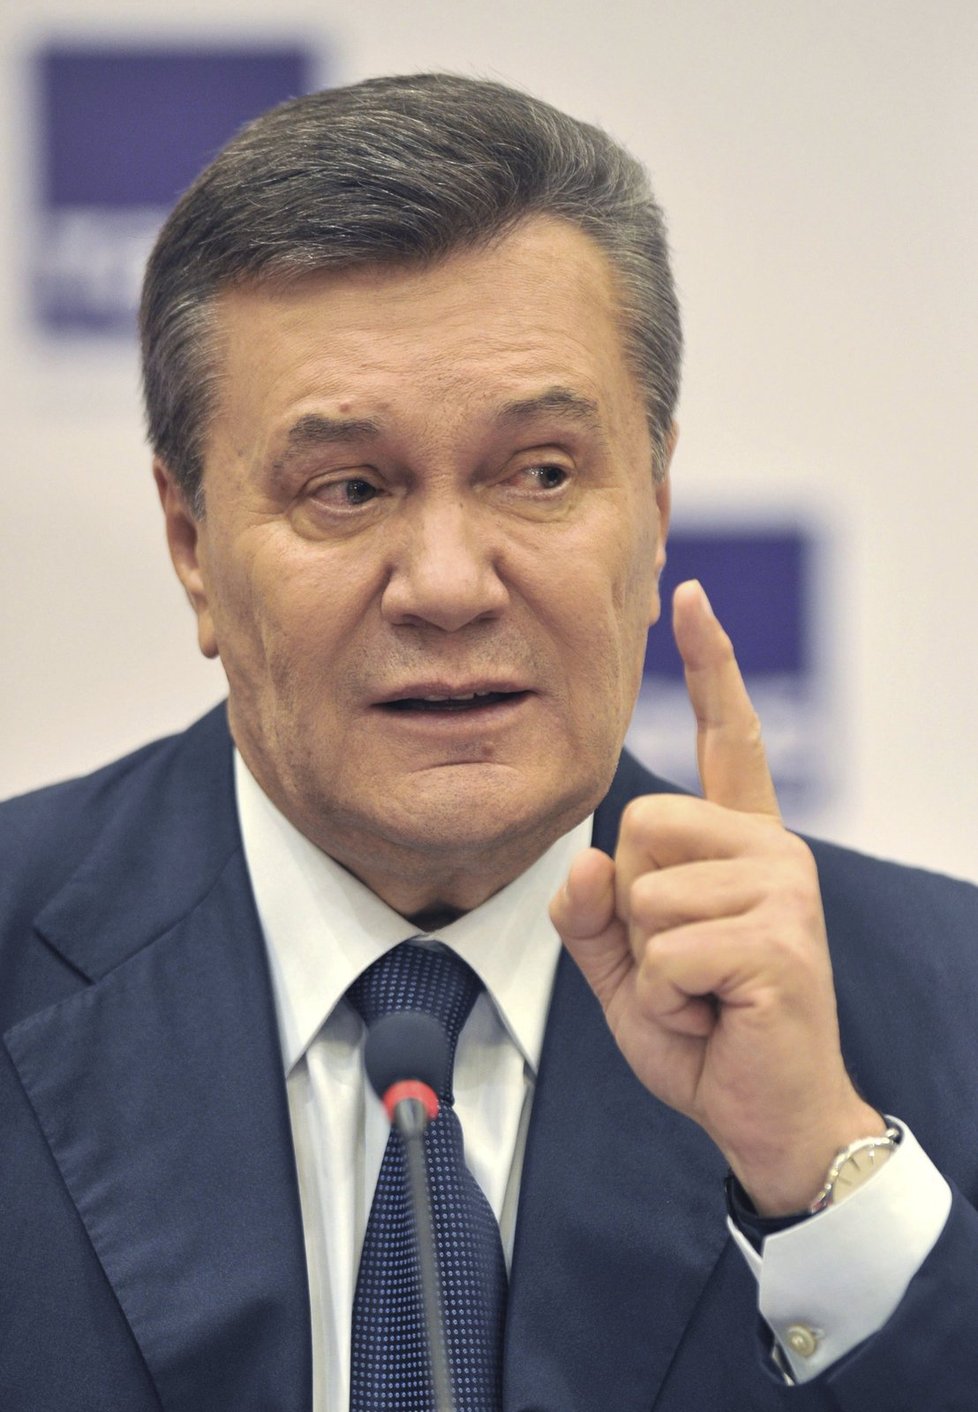 Bývalý ukrajinský prezident Viktor Janukovyč během dálkového výslechu řekl, že nedal rozkaz střílet do demonstrantů, a svaloval vinu na kancléře.